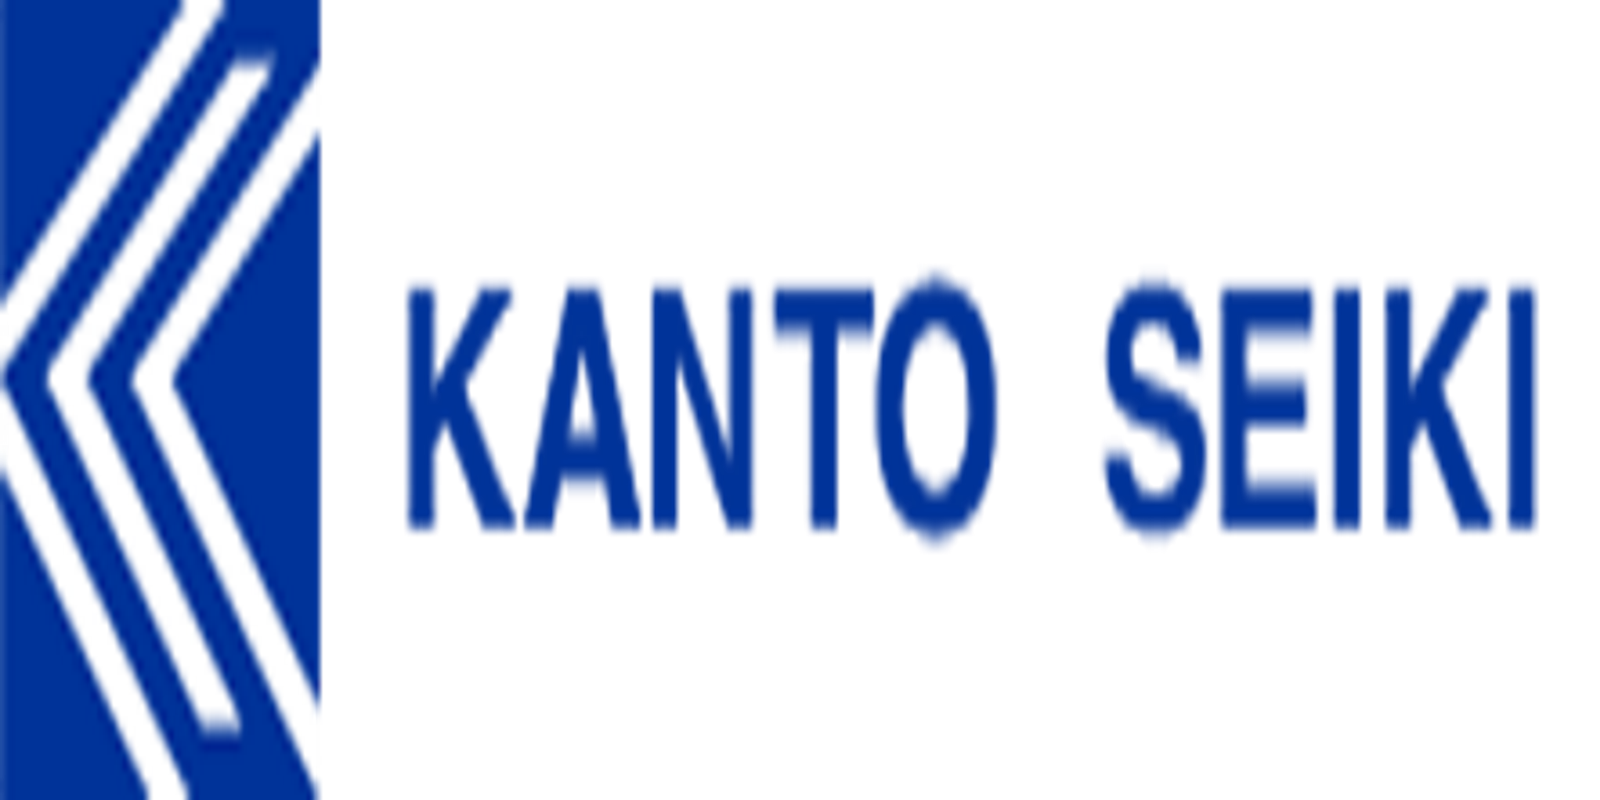 Kanto Seiki - Thủy Lực Toàn Cầu SVJ - Công Ty TNHH Thủy Lực Toàn Cầu SVJ